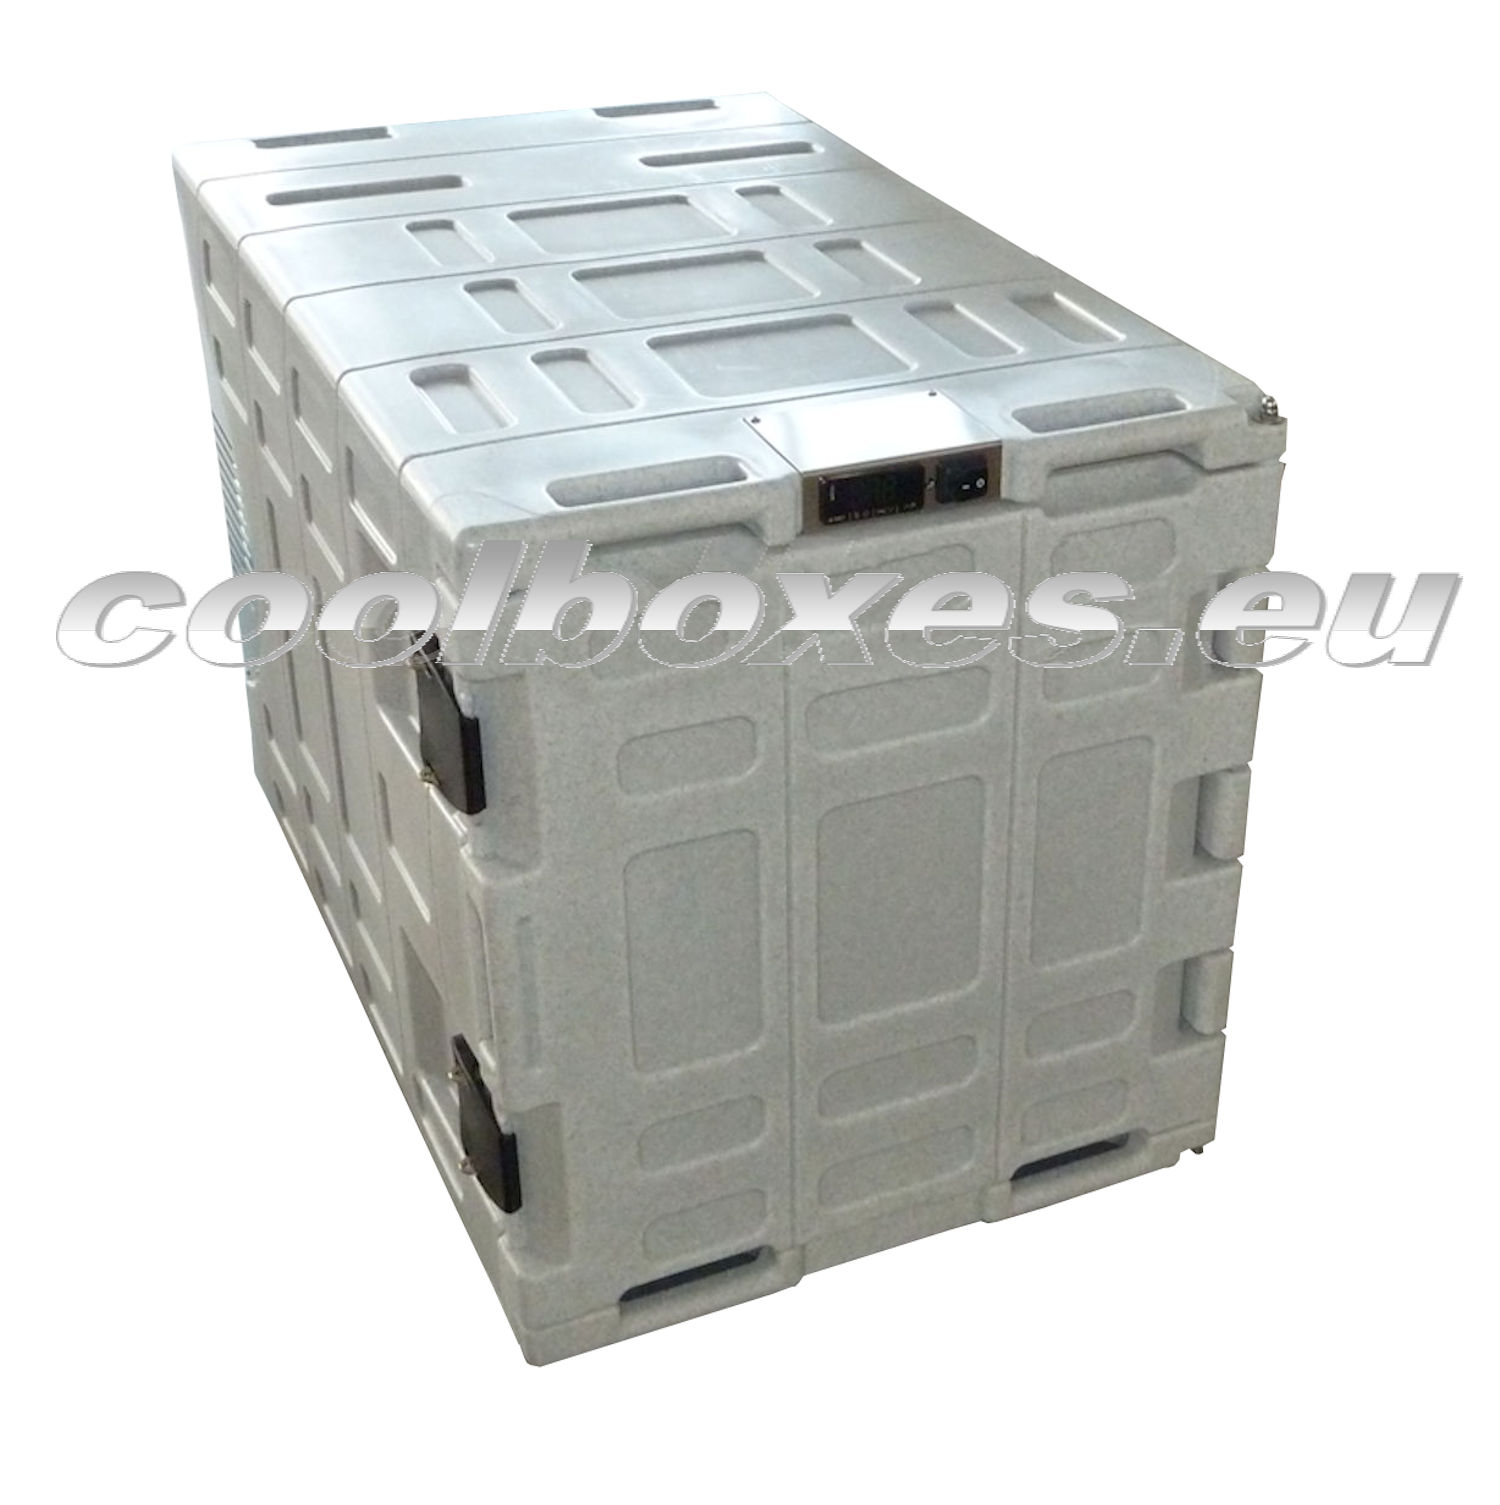 Mobilní chladící / mrazící box COLDTAINER (EUROENGEL)  F0140 NDN +25°C až - 10°C